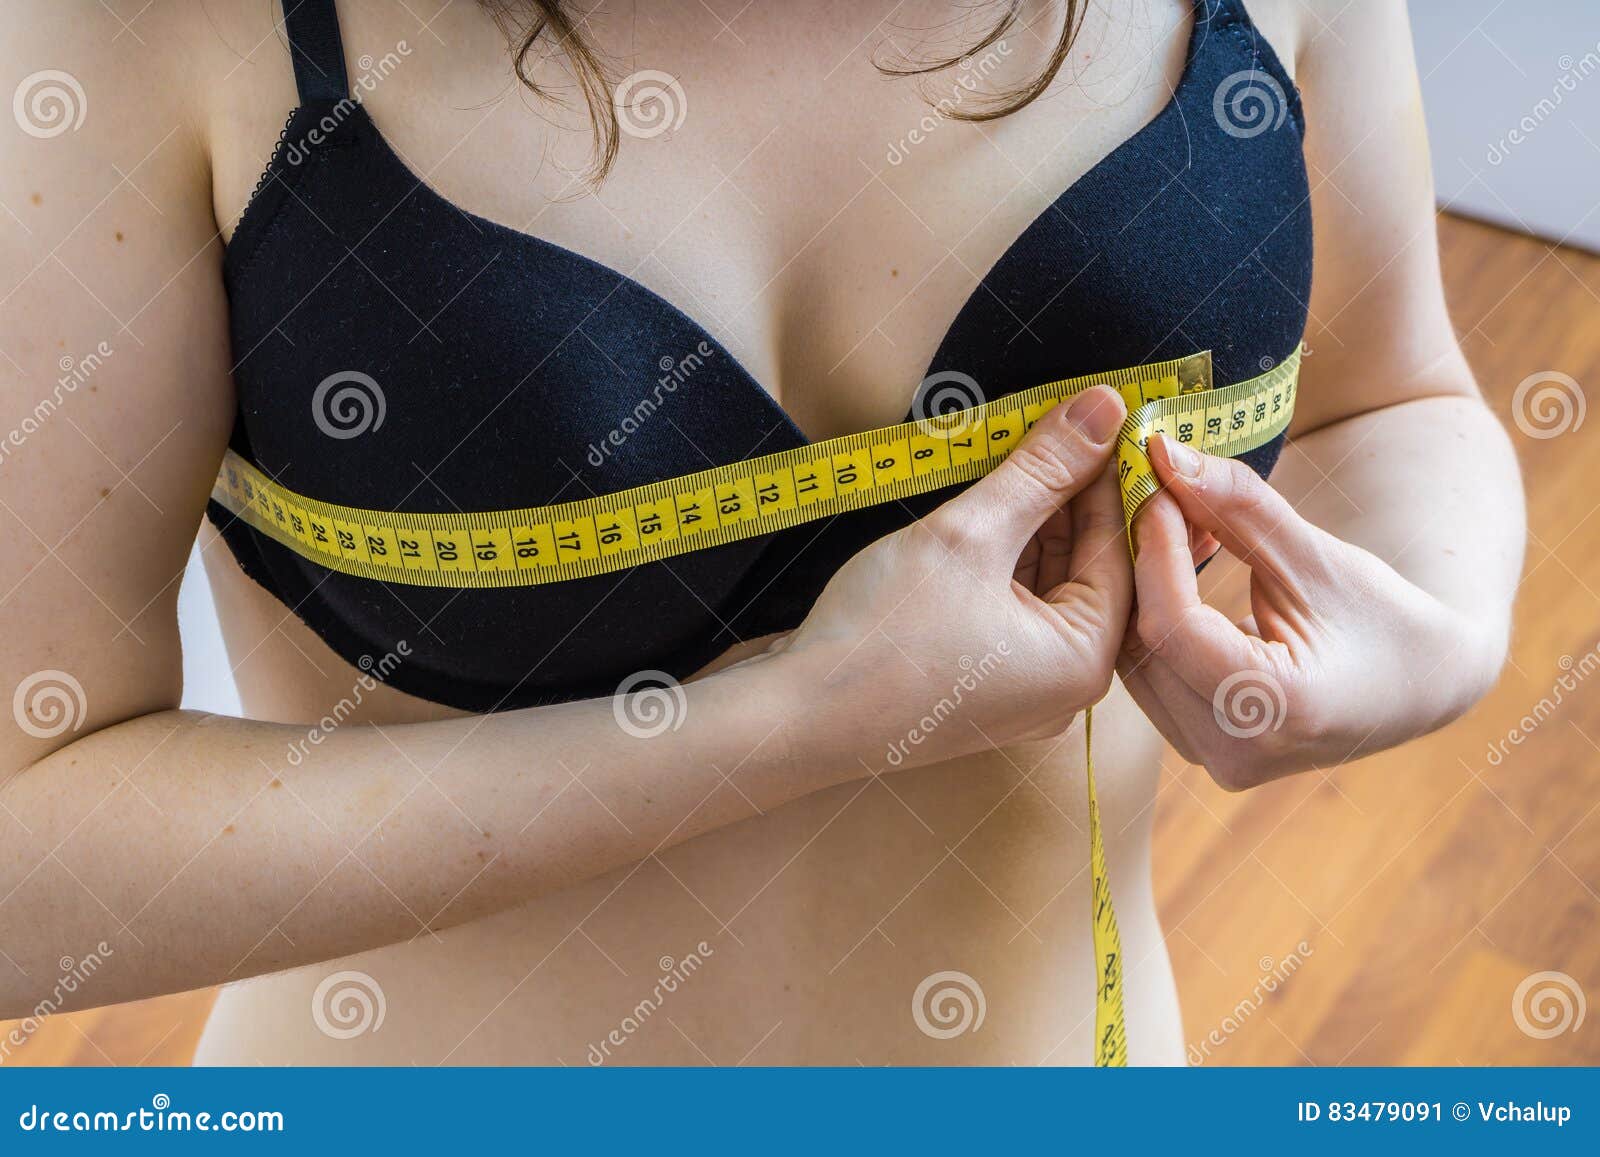 грудь измеряют с лифчиком фото 28